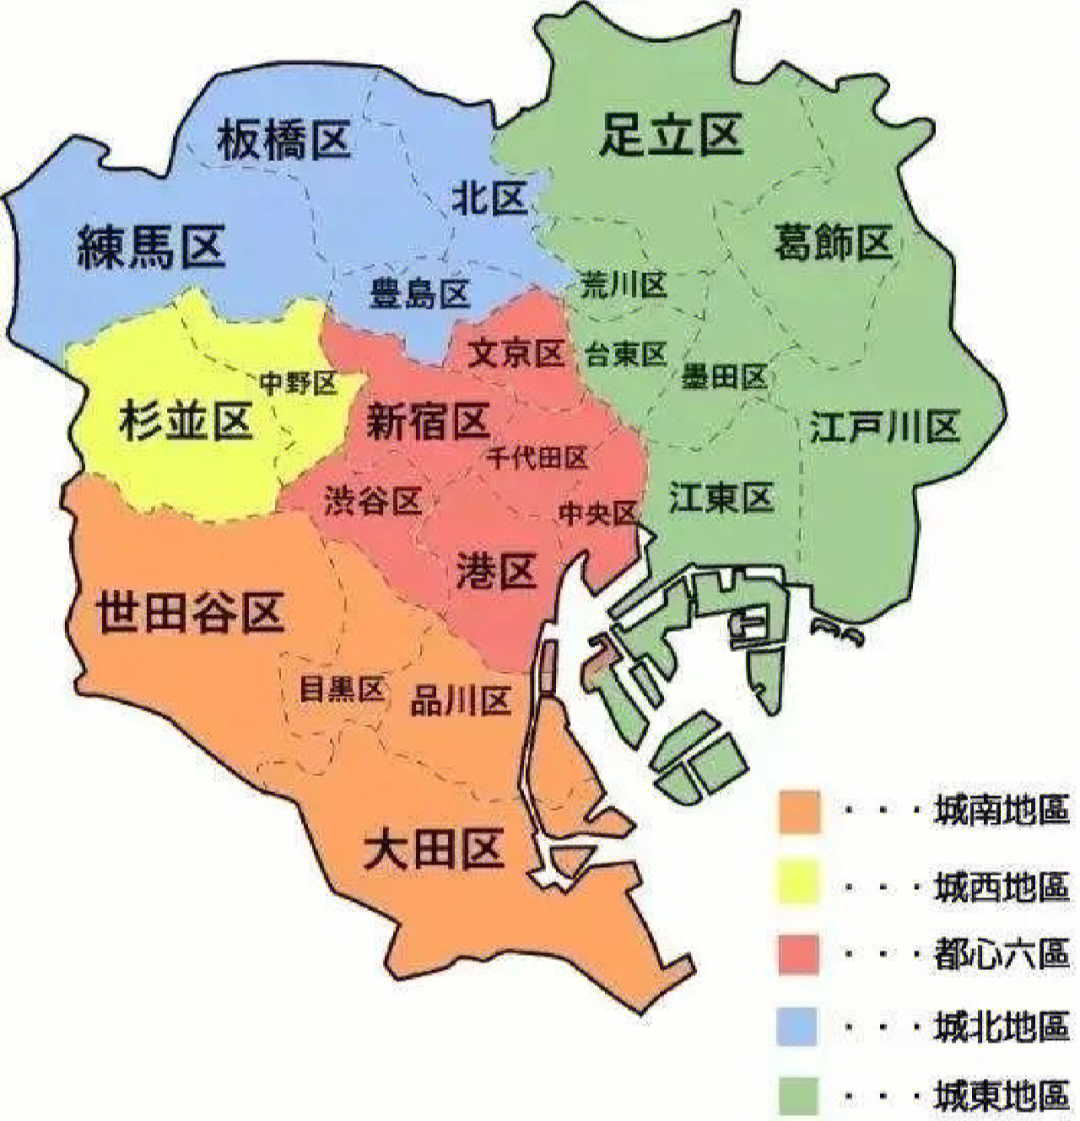 在东京你会选择哪个区域居住